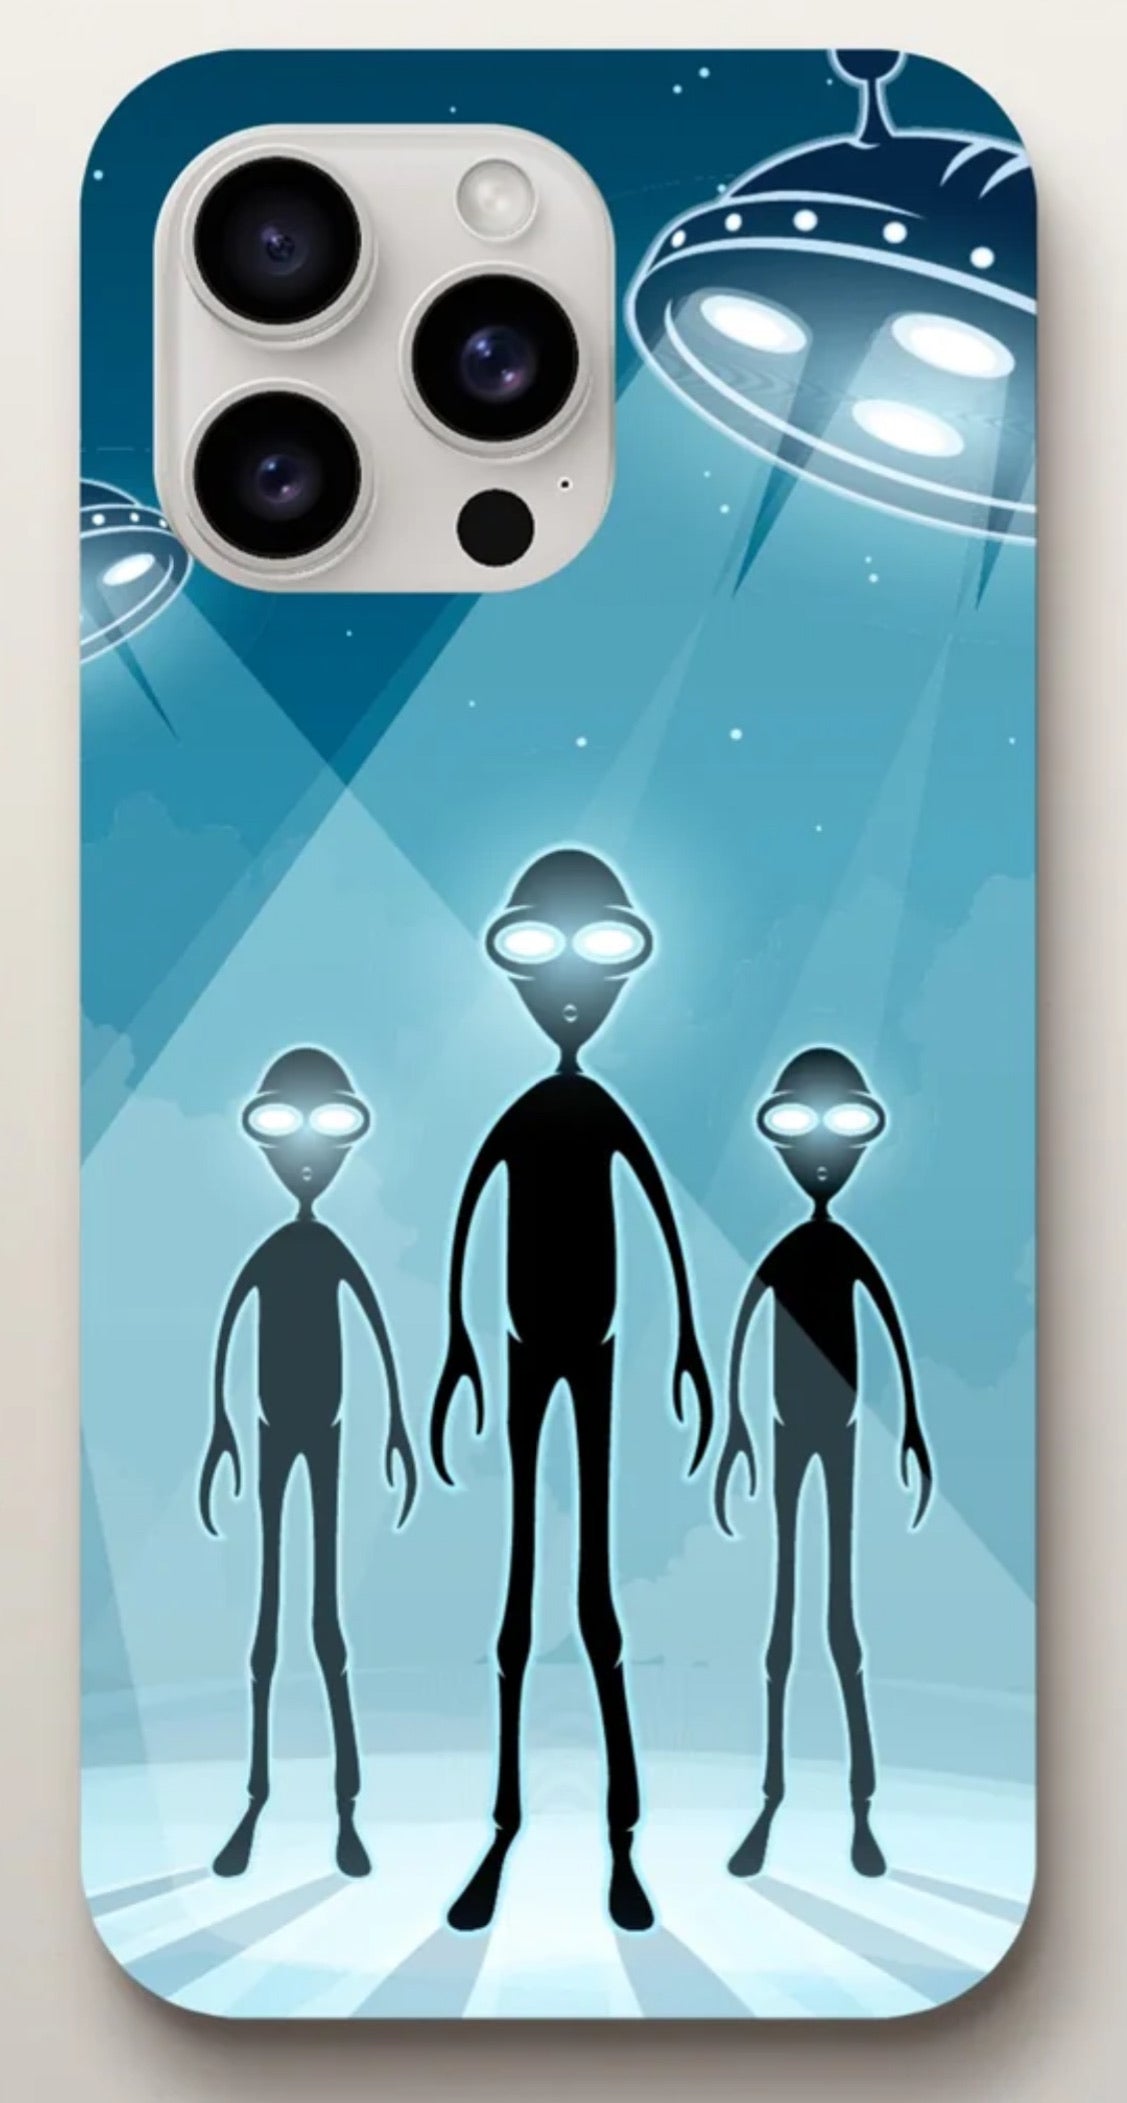 Aliens & Zombie Phone Cases